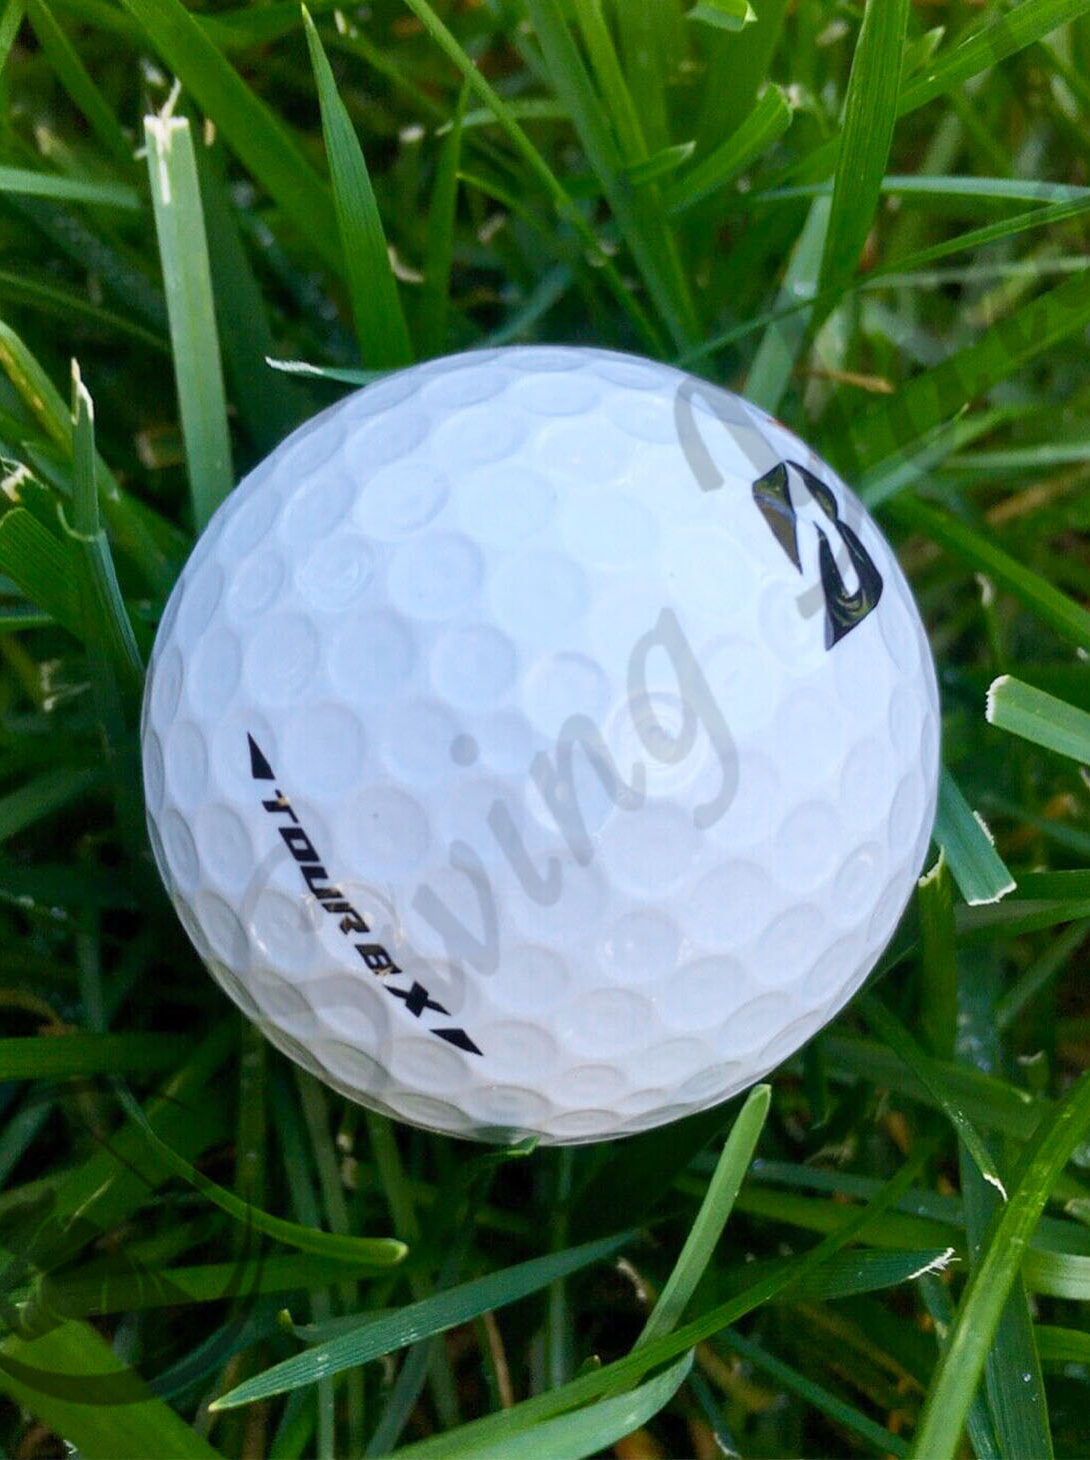 A Bridgestone Tour BX ball in the grass